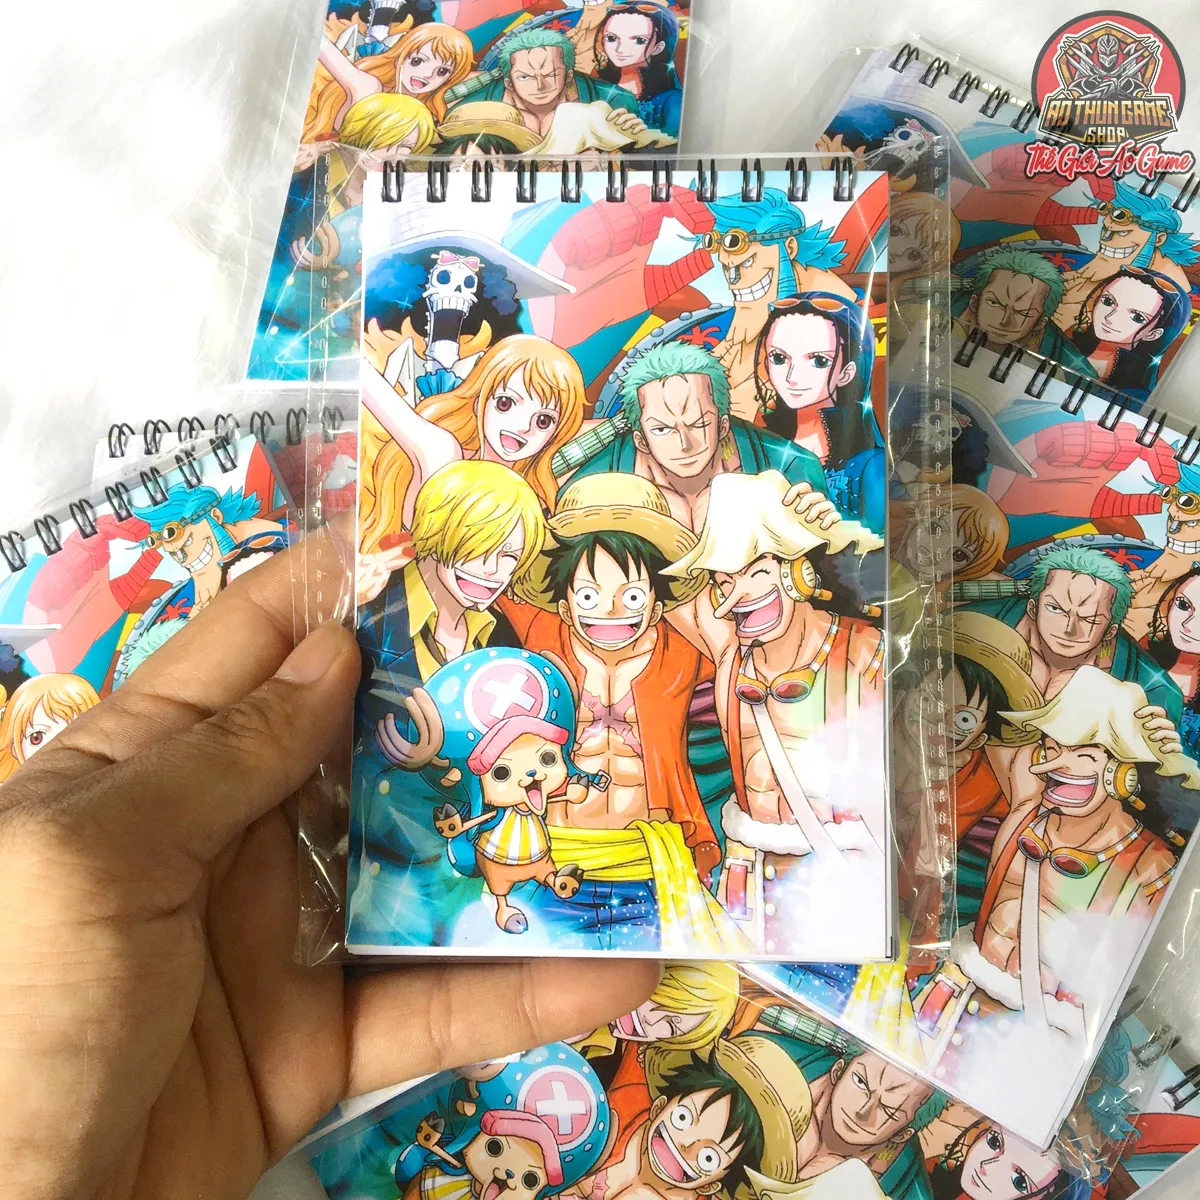 Sổ tay One Piece là tài liệu tuyệt vời cho những fan đam mê bộ truyện này. Từ những thông tin cơ bản về toàn bộ bộ truyện, đến những chi tiết về nhân vật độc đáo, sổ tay này đã tổng hợp tất cả những thông tin hữu ích mà bạn cần biết về thế giới One Piece. Hãy cùng khám phá tài liệu này để tìm hiểu thêm về thế giới đầy màu sắc của Luffy Mũ Rơm và nhóm hải tặc Mũ Rơm!